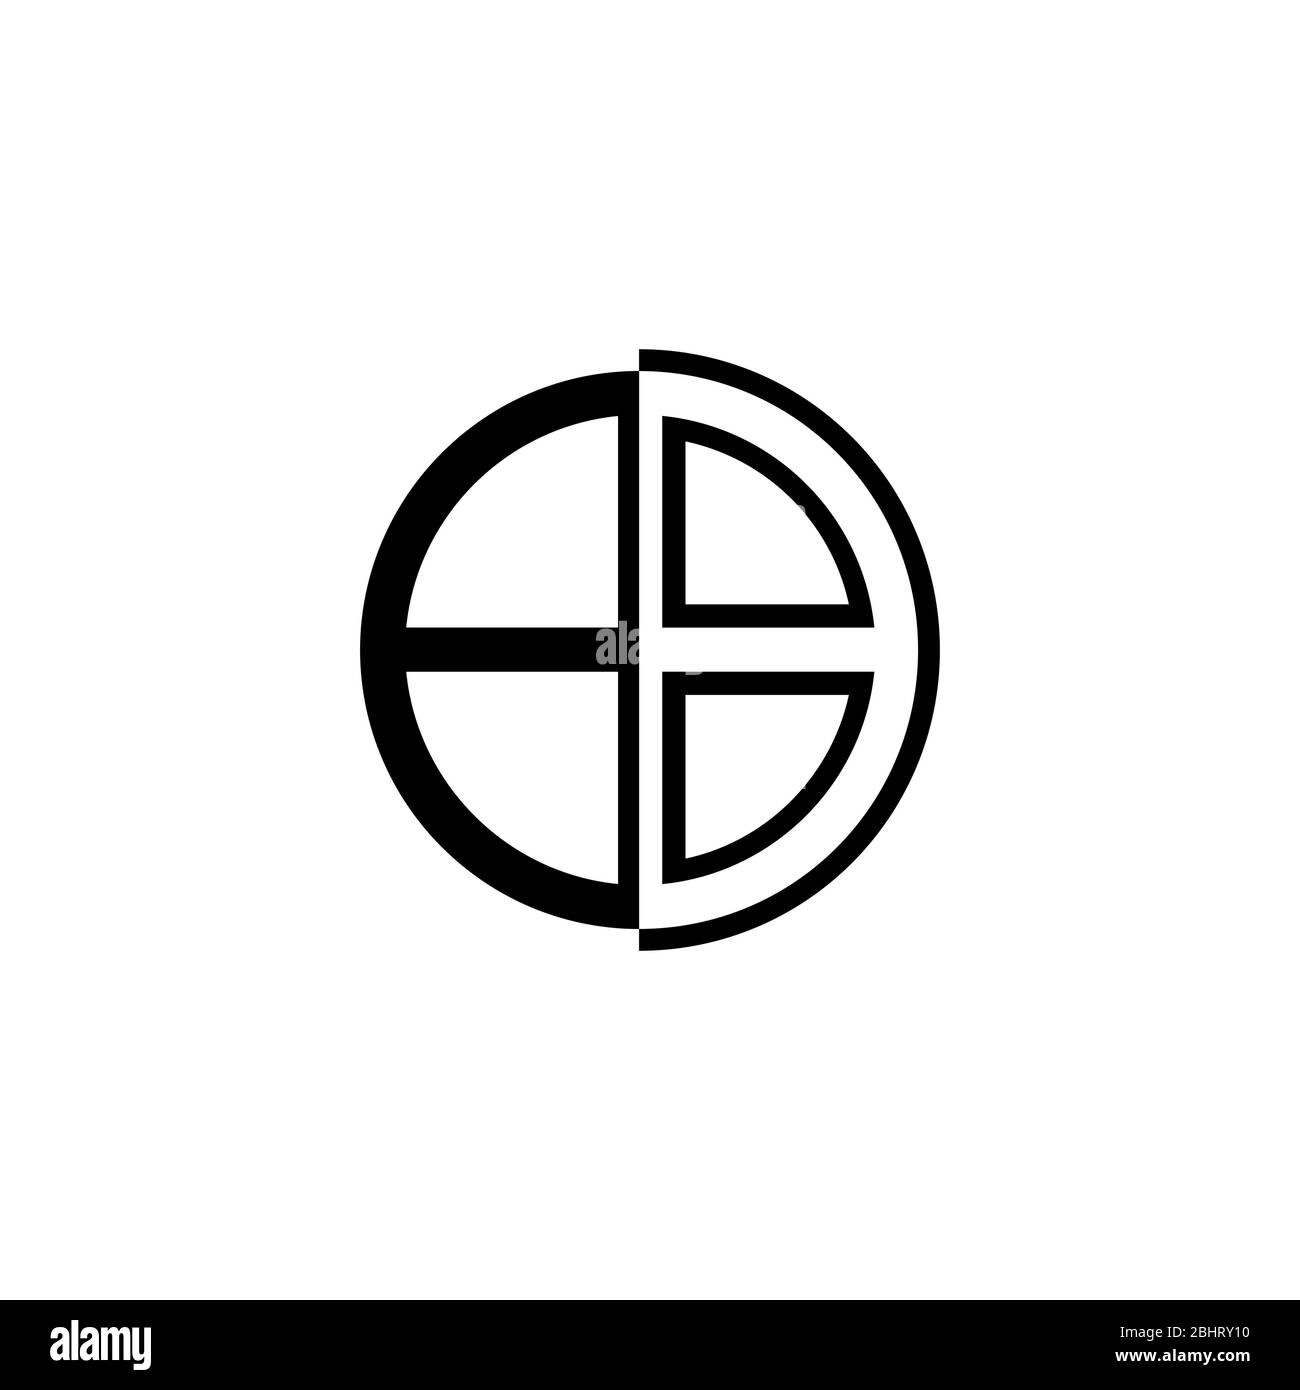 Logo commercial abstrait, logo graphique de la fenêtre circulaire, modèle de concept de logo de la lettre B initiale, isolé sur fond blanc. Illustration de Vecteur